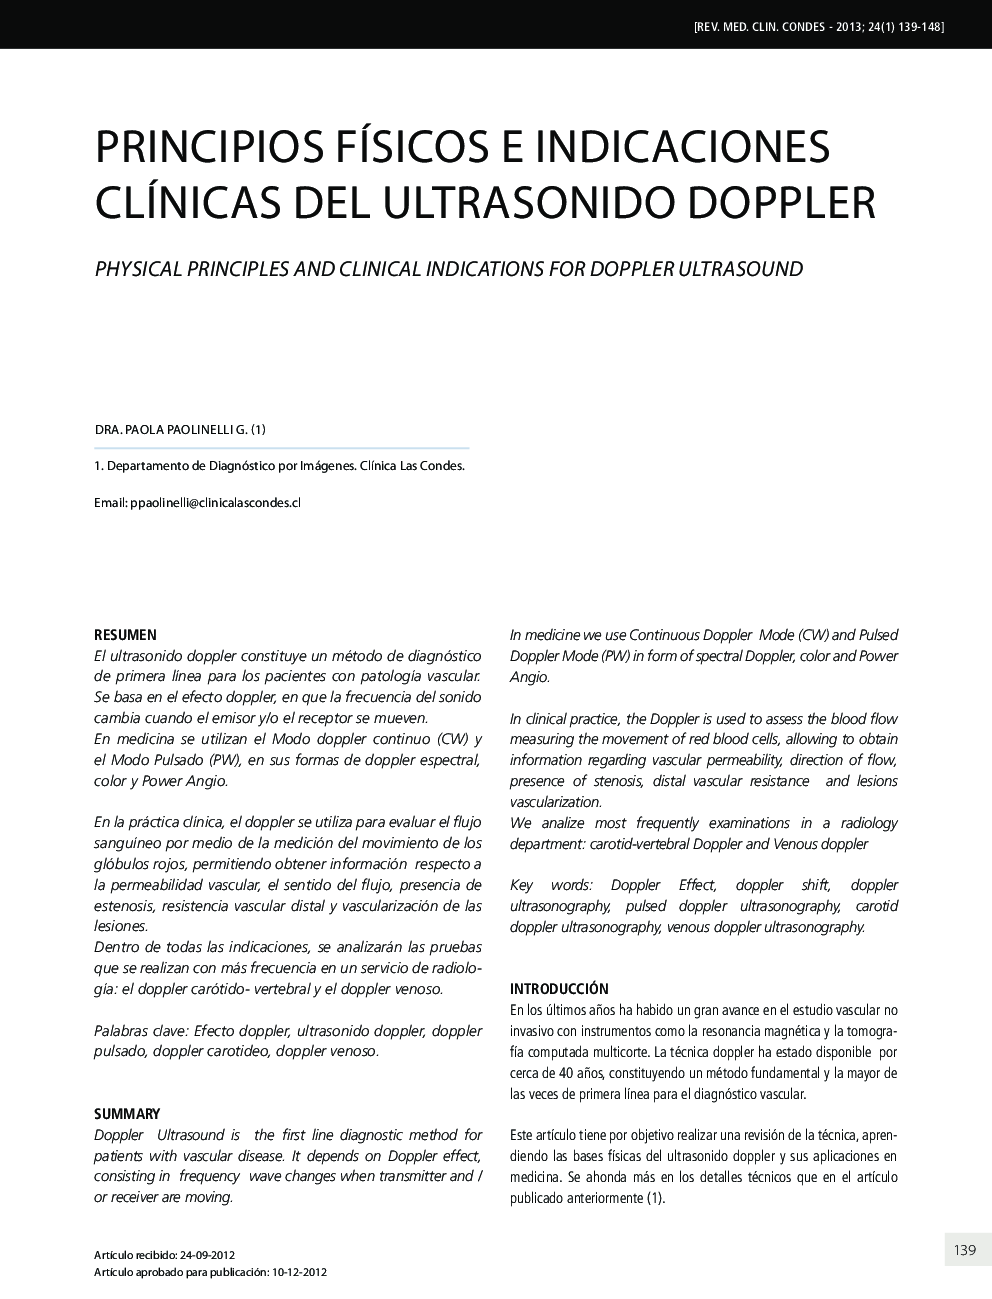 Principios físicos e indicaciones clínicas del ultrasonido doppler